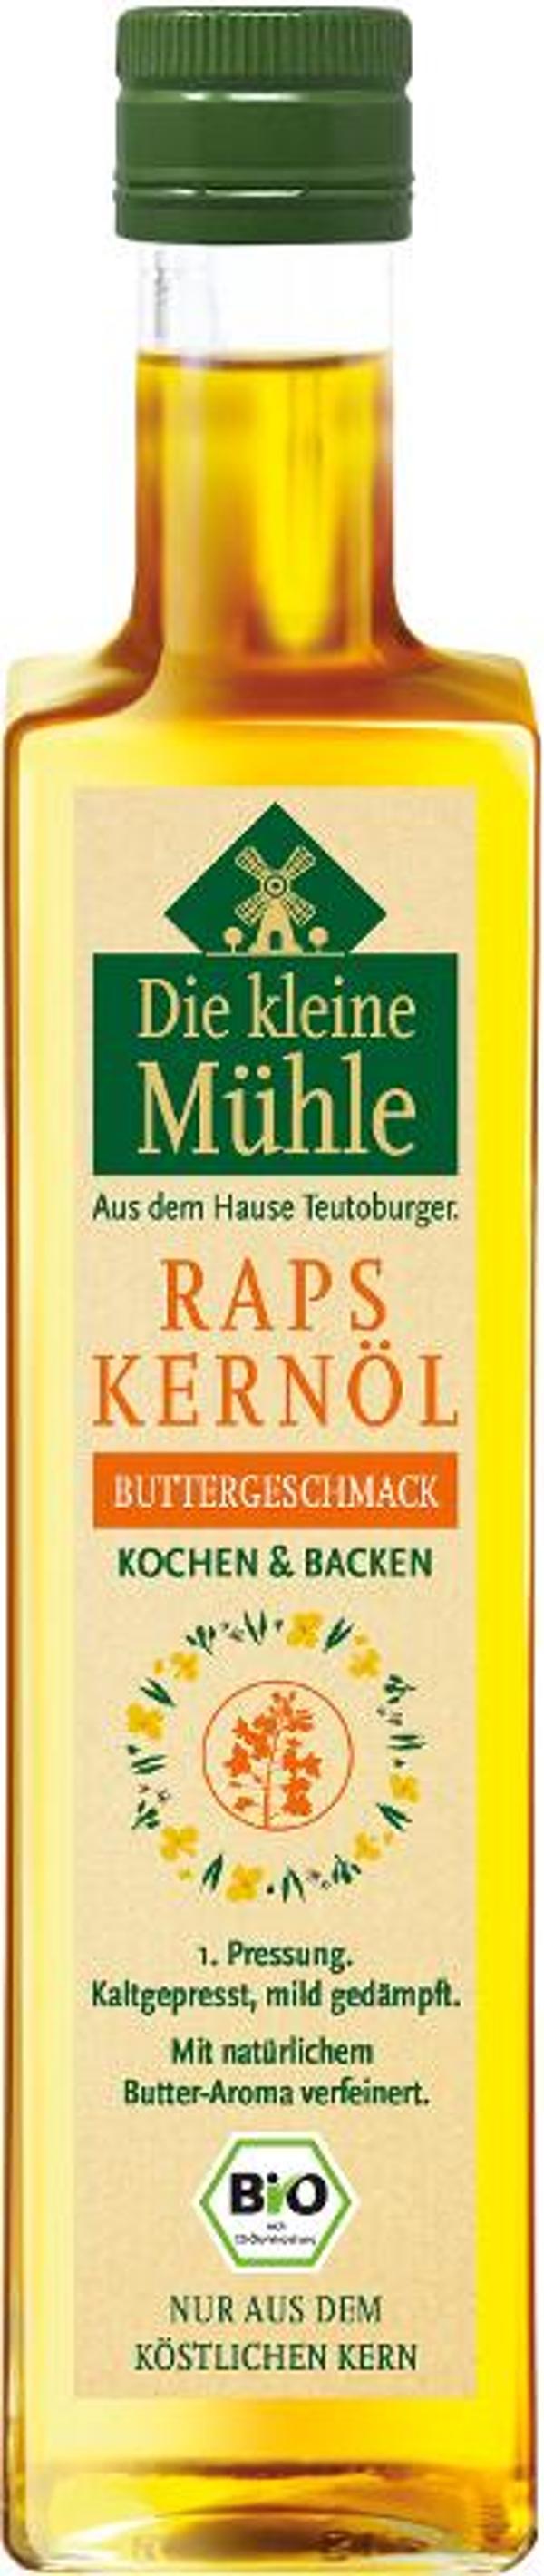 Produktfoto zu Raps-Kernöl Buttergeschmack von Die kleine Mühle